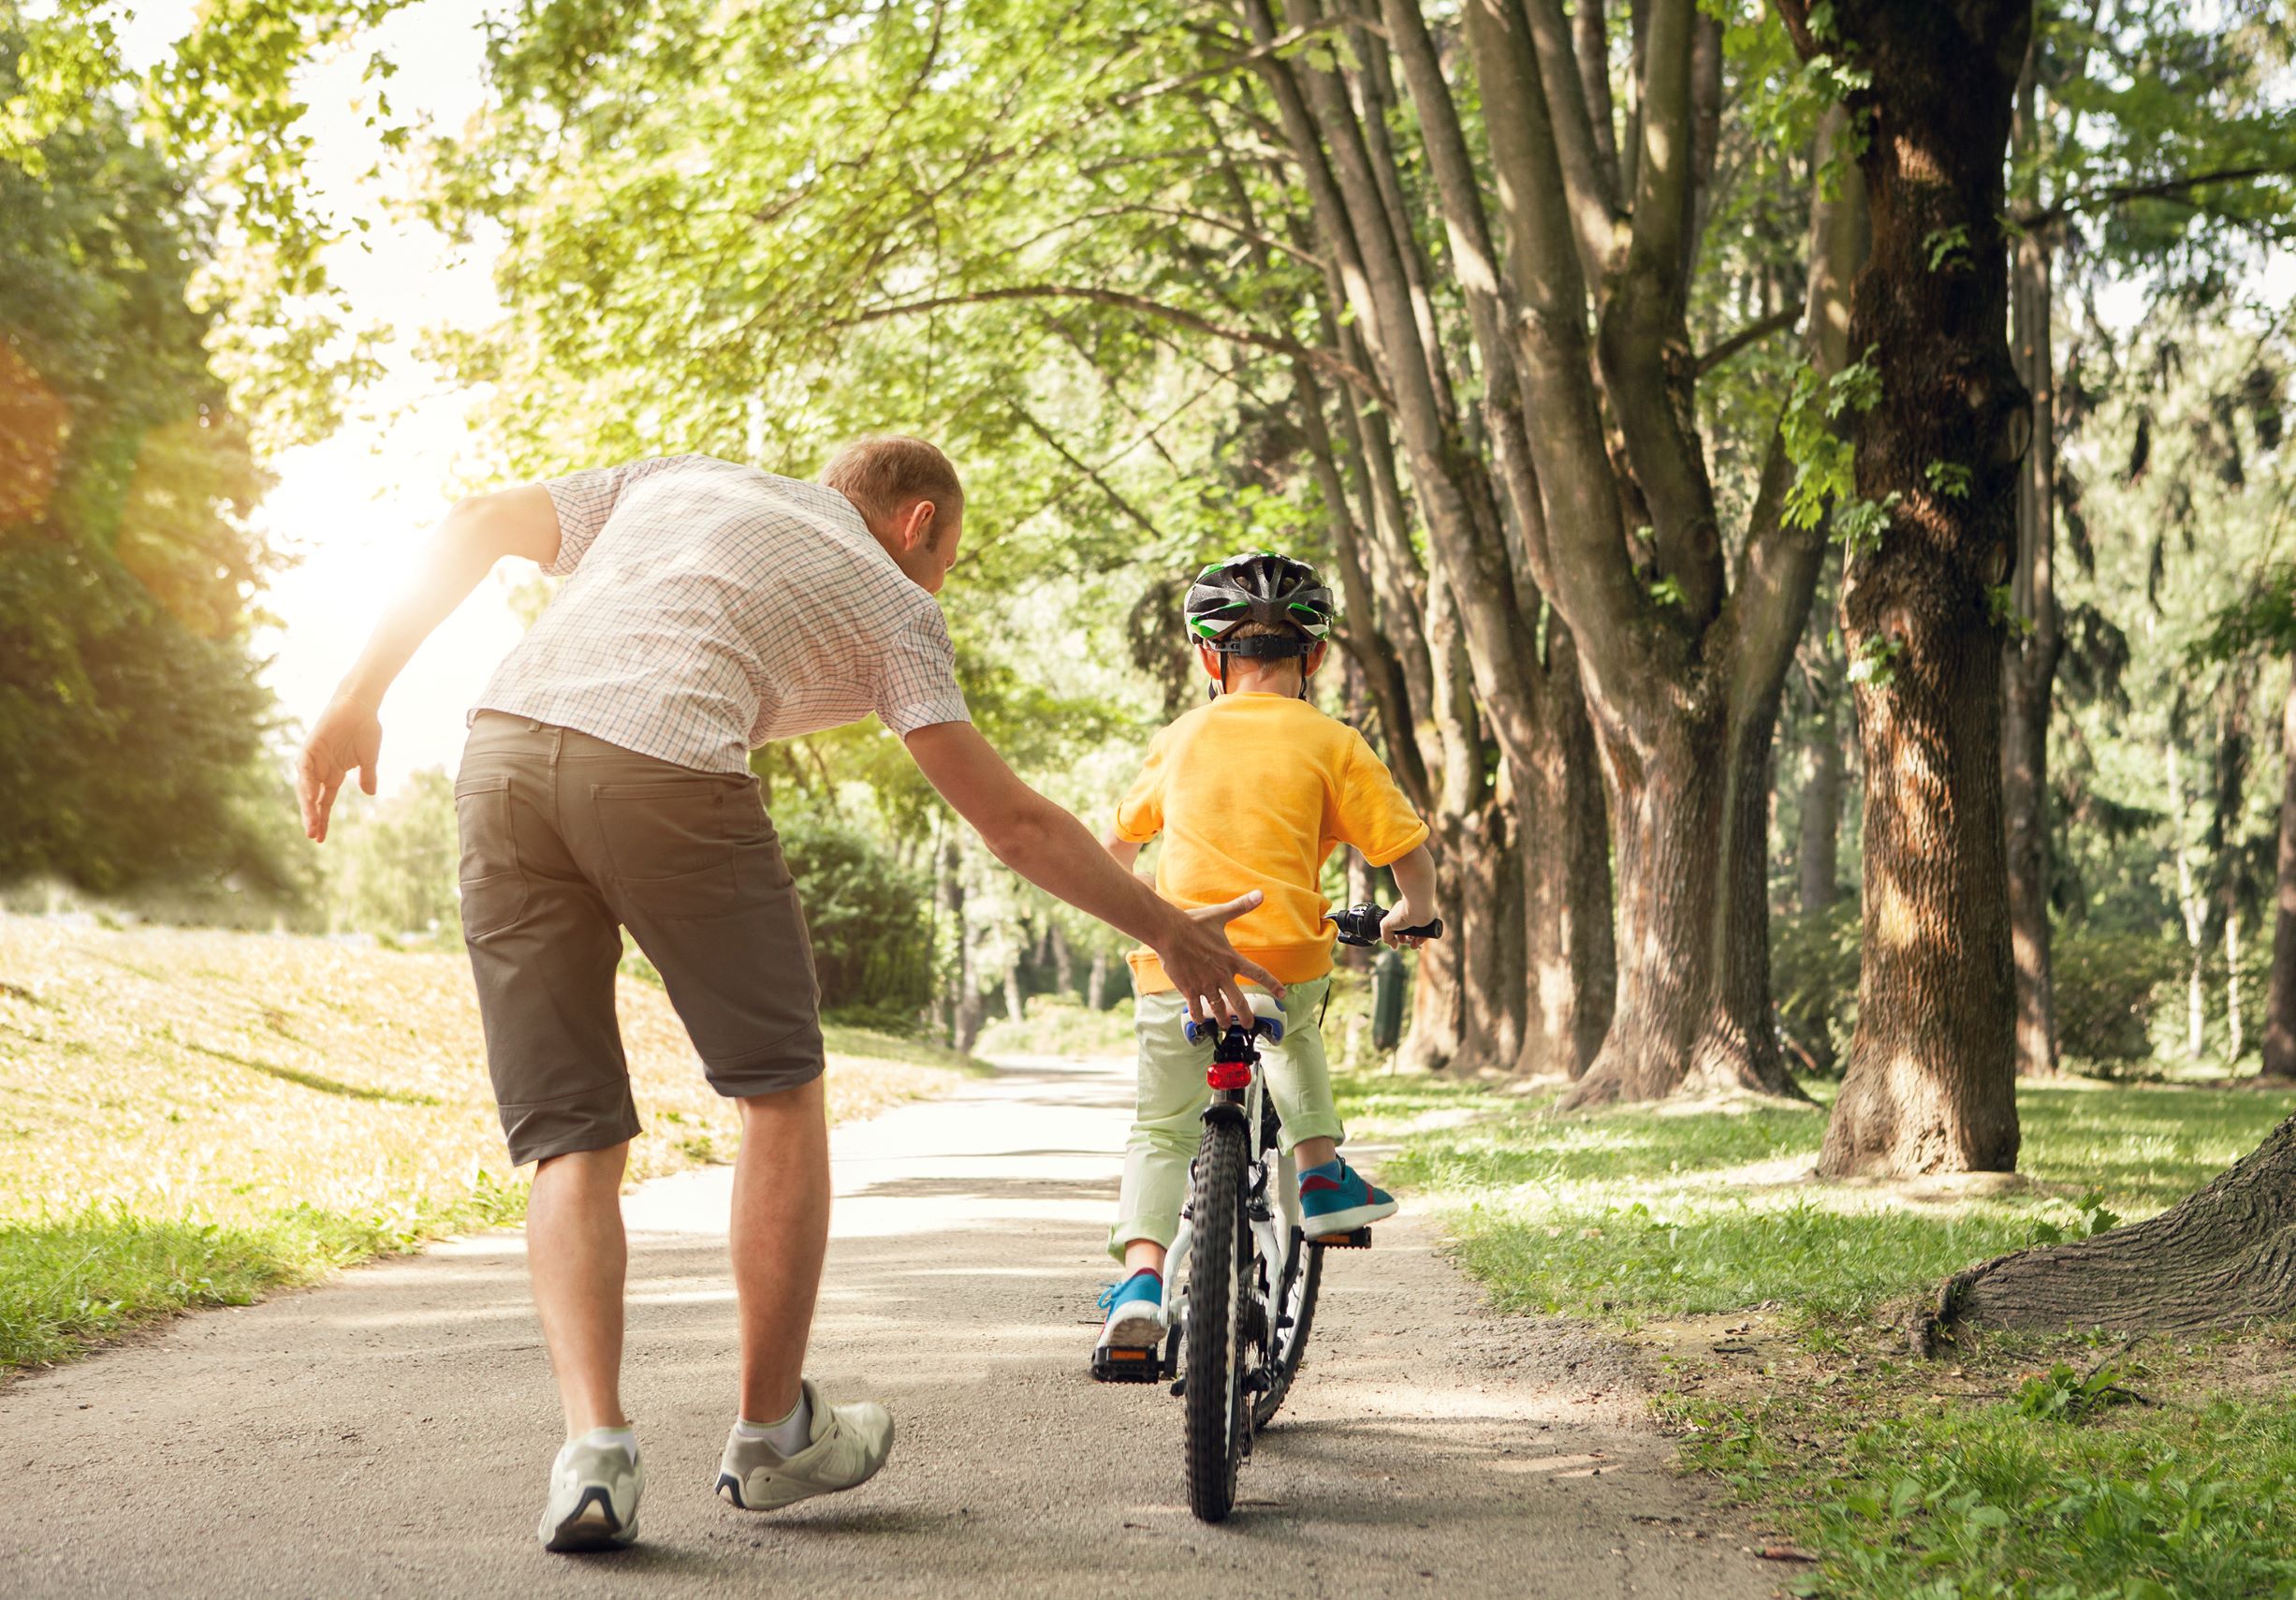 oče uči sina kolesariti